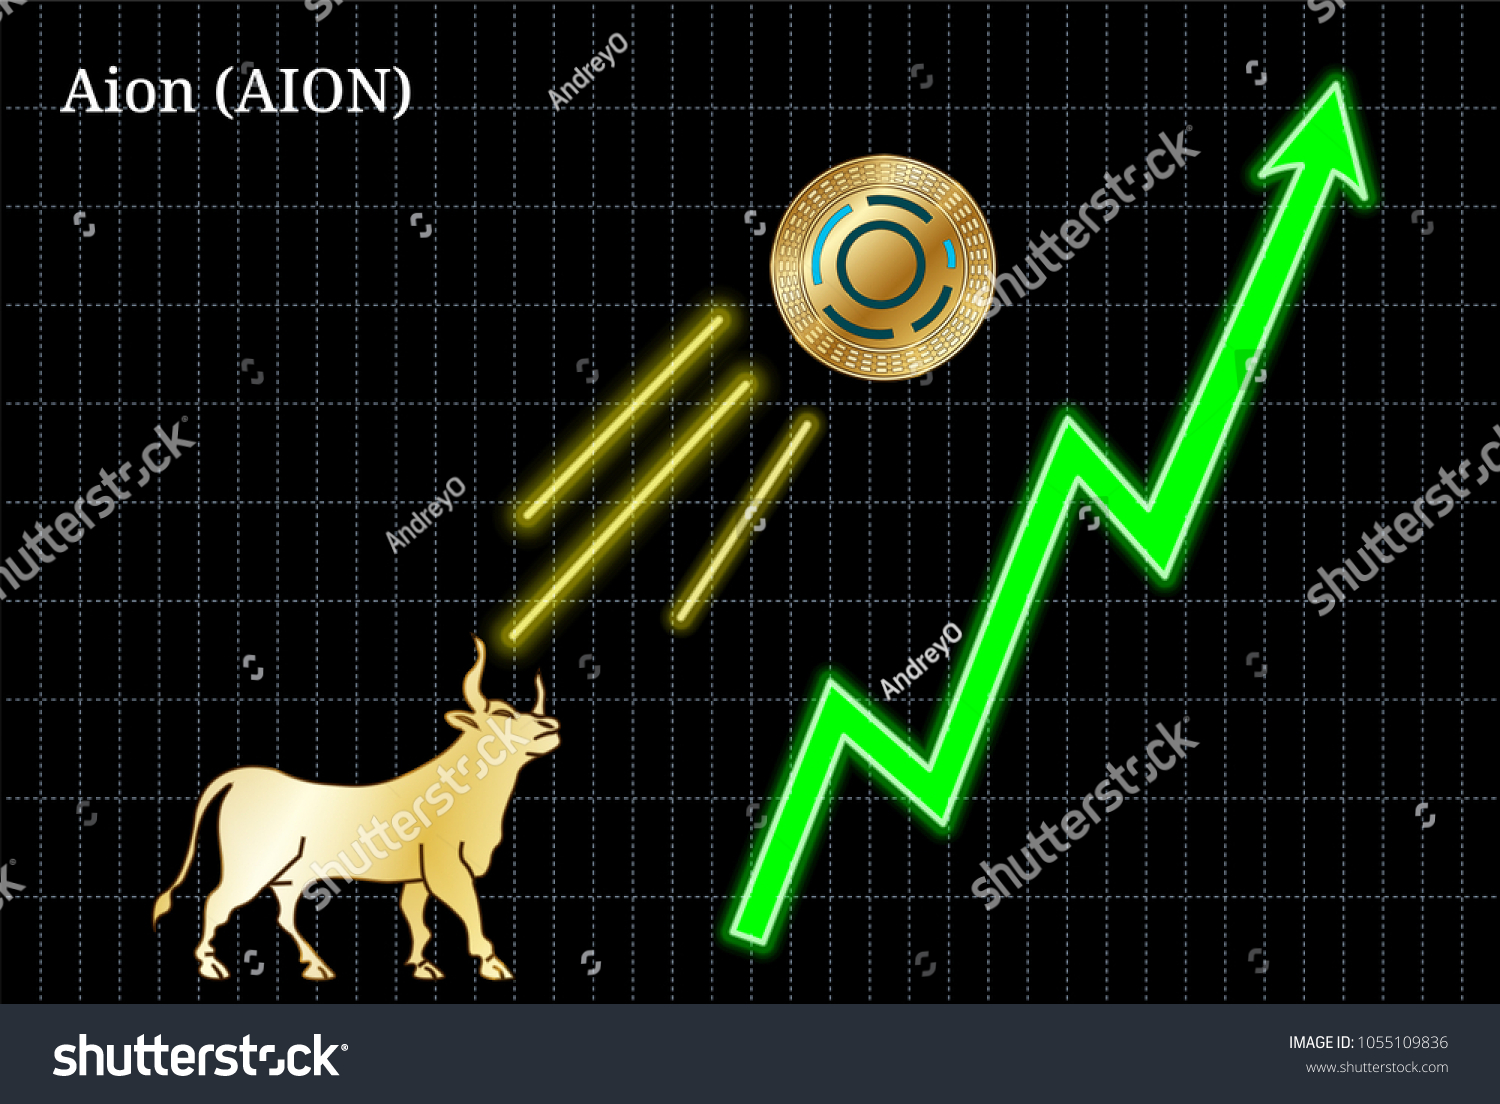 Aion Coin Chart